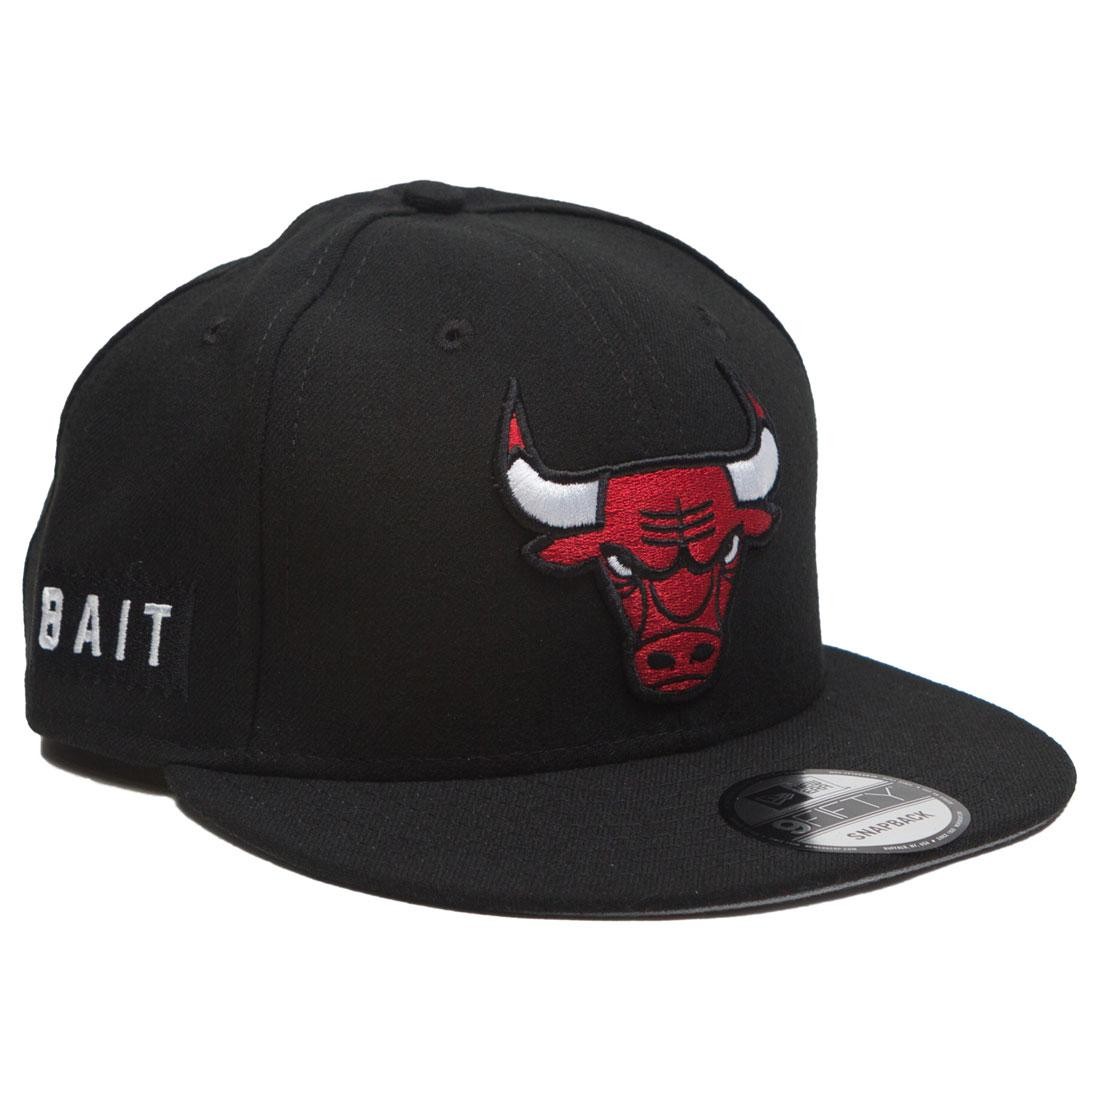 Cheap Urlfreeze Jordan Outlet x NBA X New Era 9Fifty Chicago Bulls OTC Snapback Cap (black)